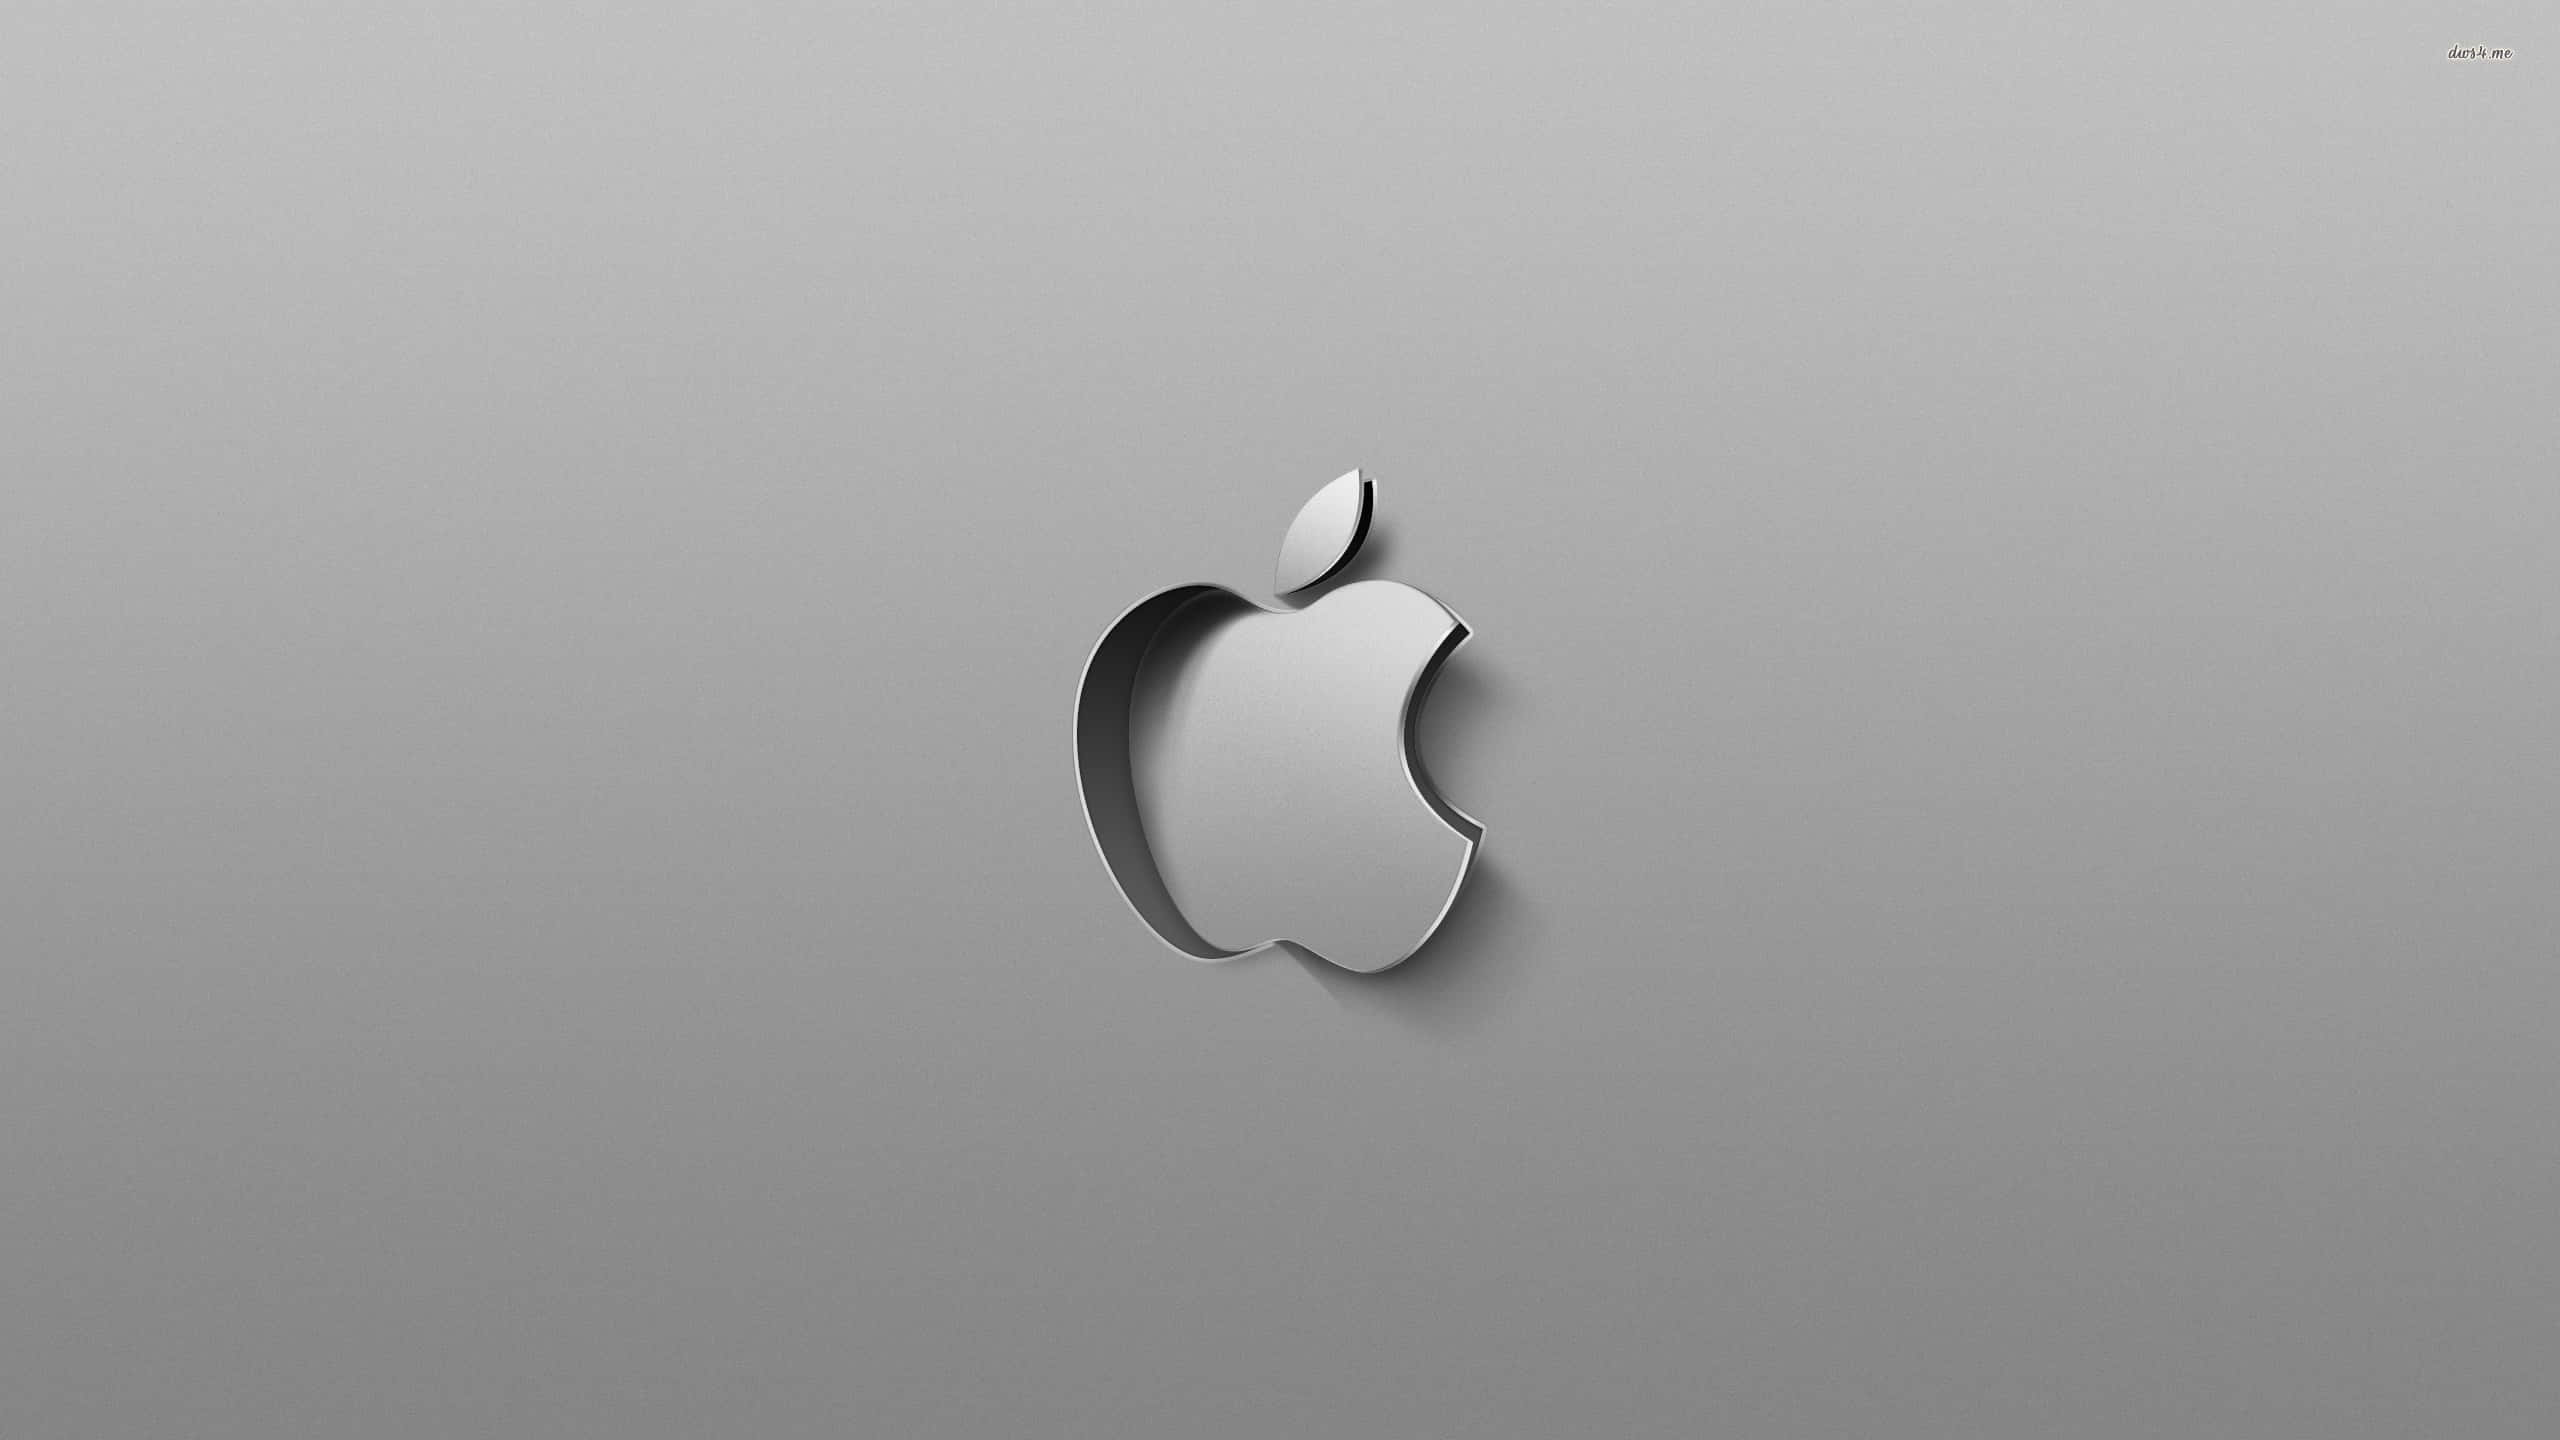 Logoda Apple 2560 X 1440 Plano De Fundo.